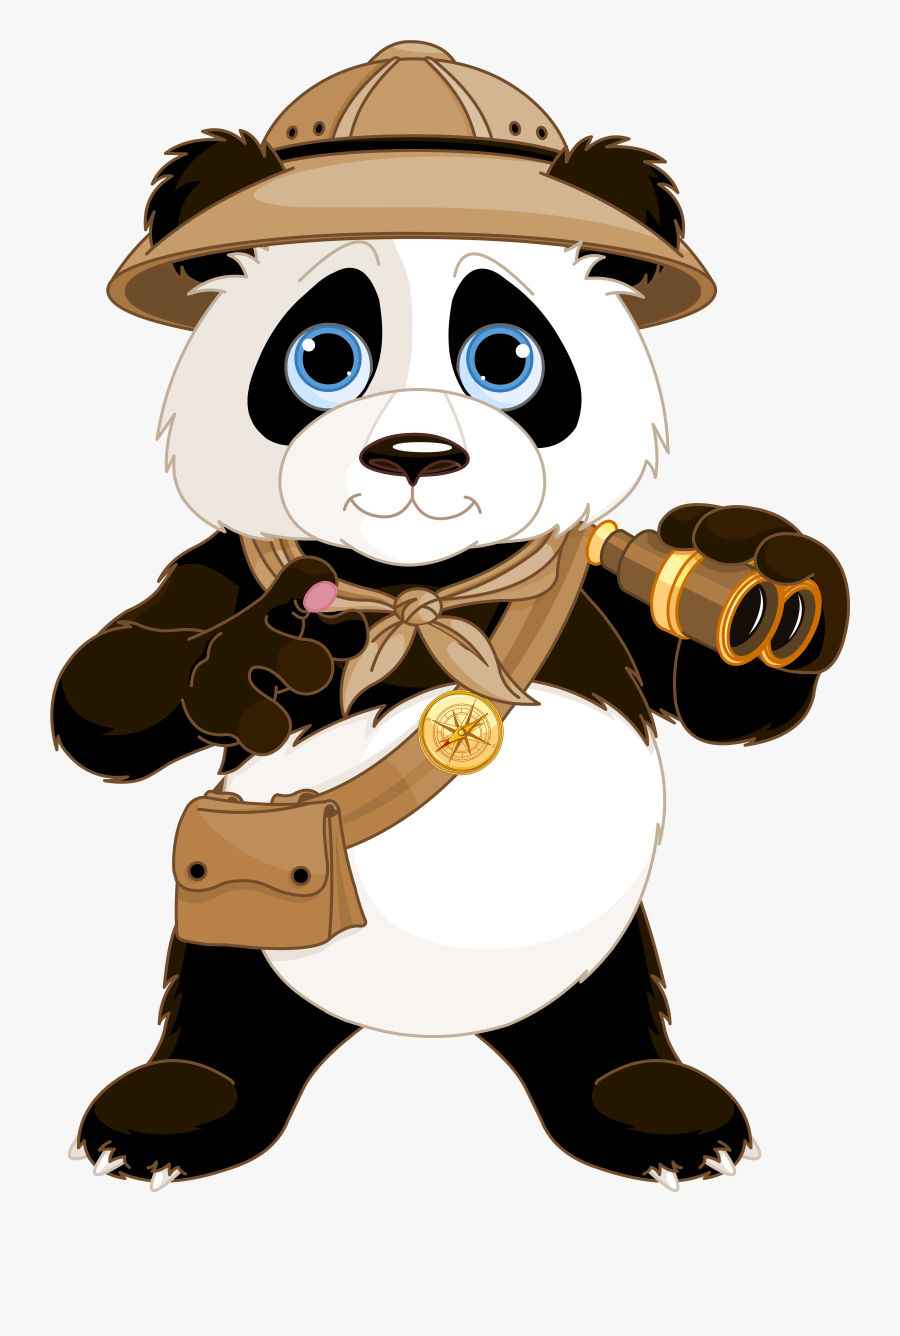 Cute Panda Clipart Page 2 - Cute Panda Cartoon Png, Transparent Clipart